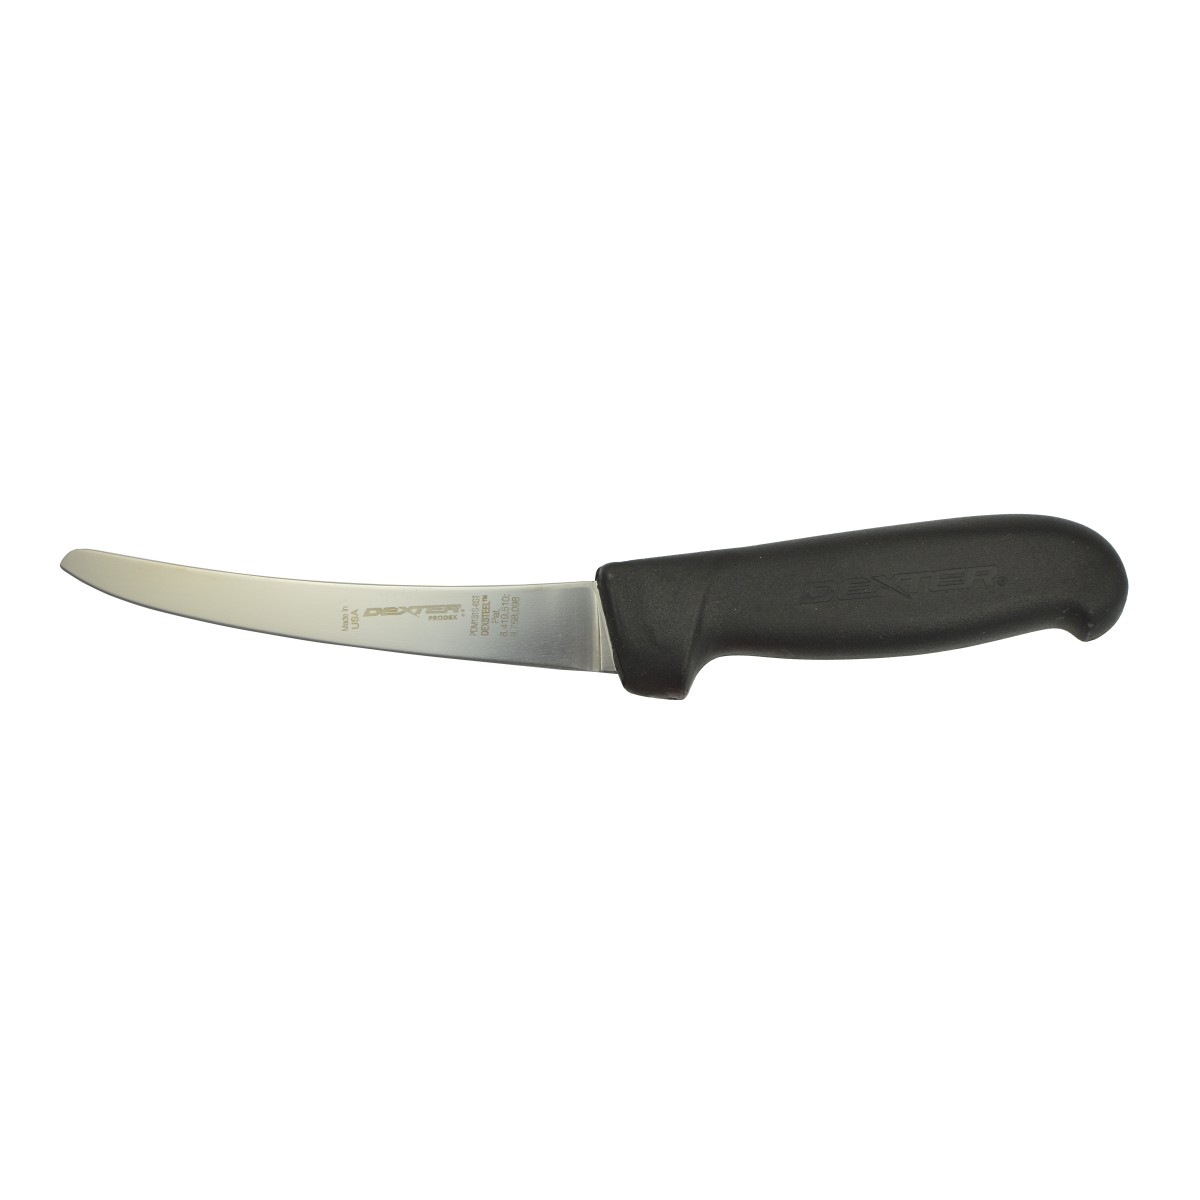 KNIFE DEXTER BONER 15CM SAFE TIP BLACK